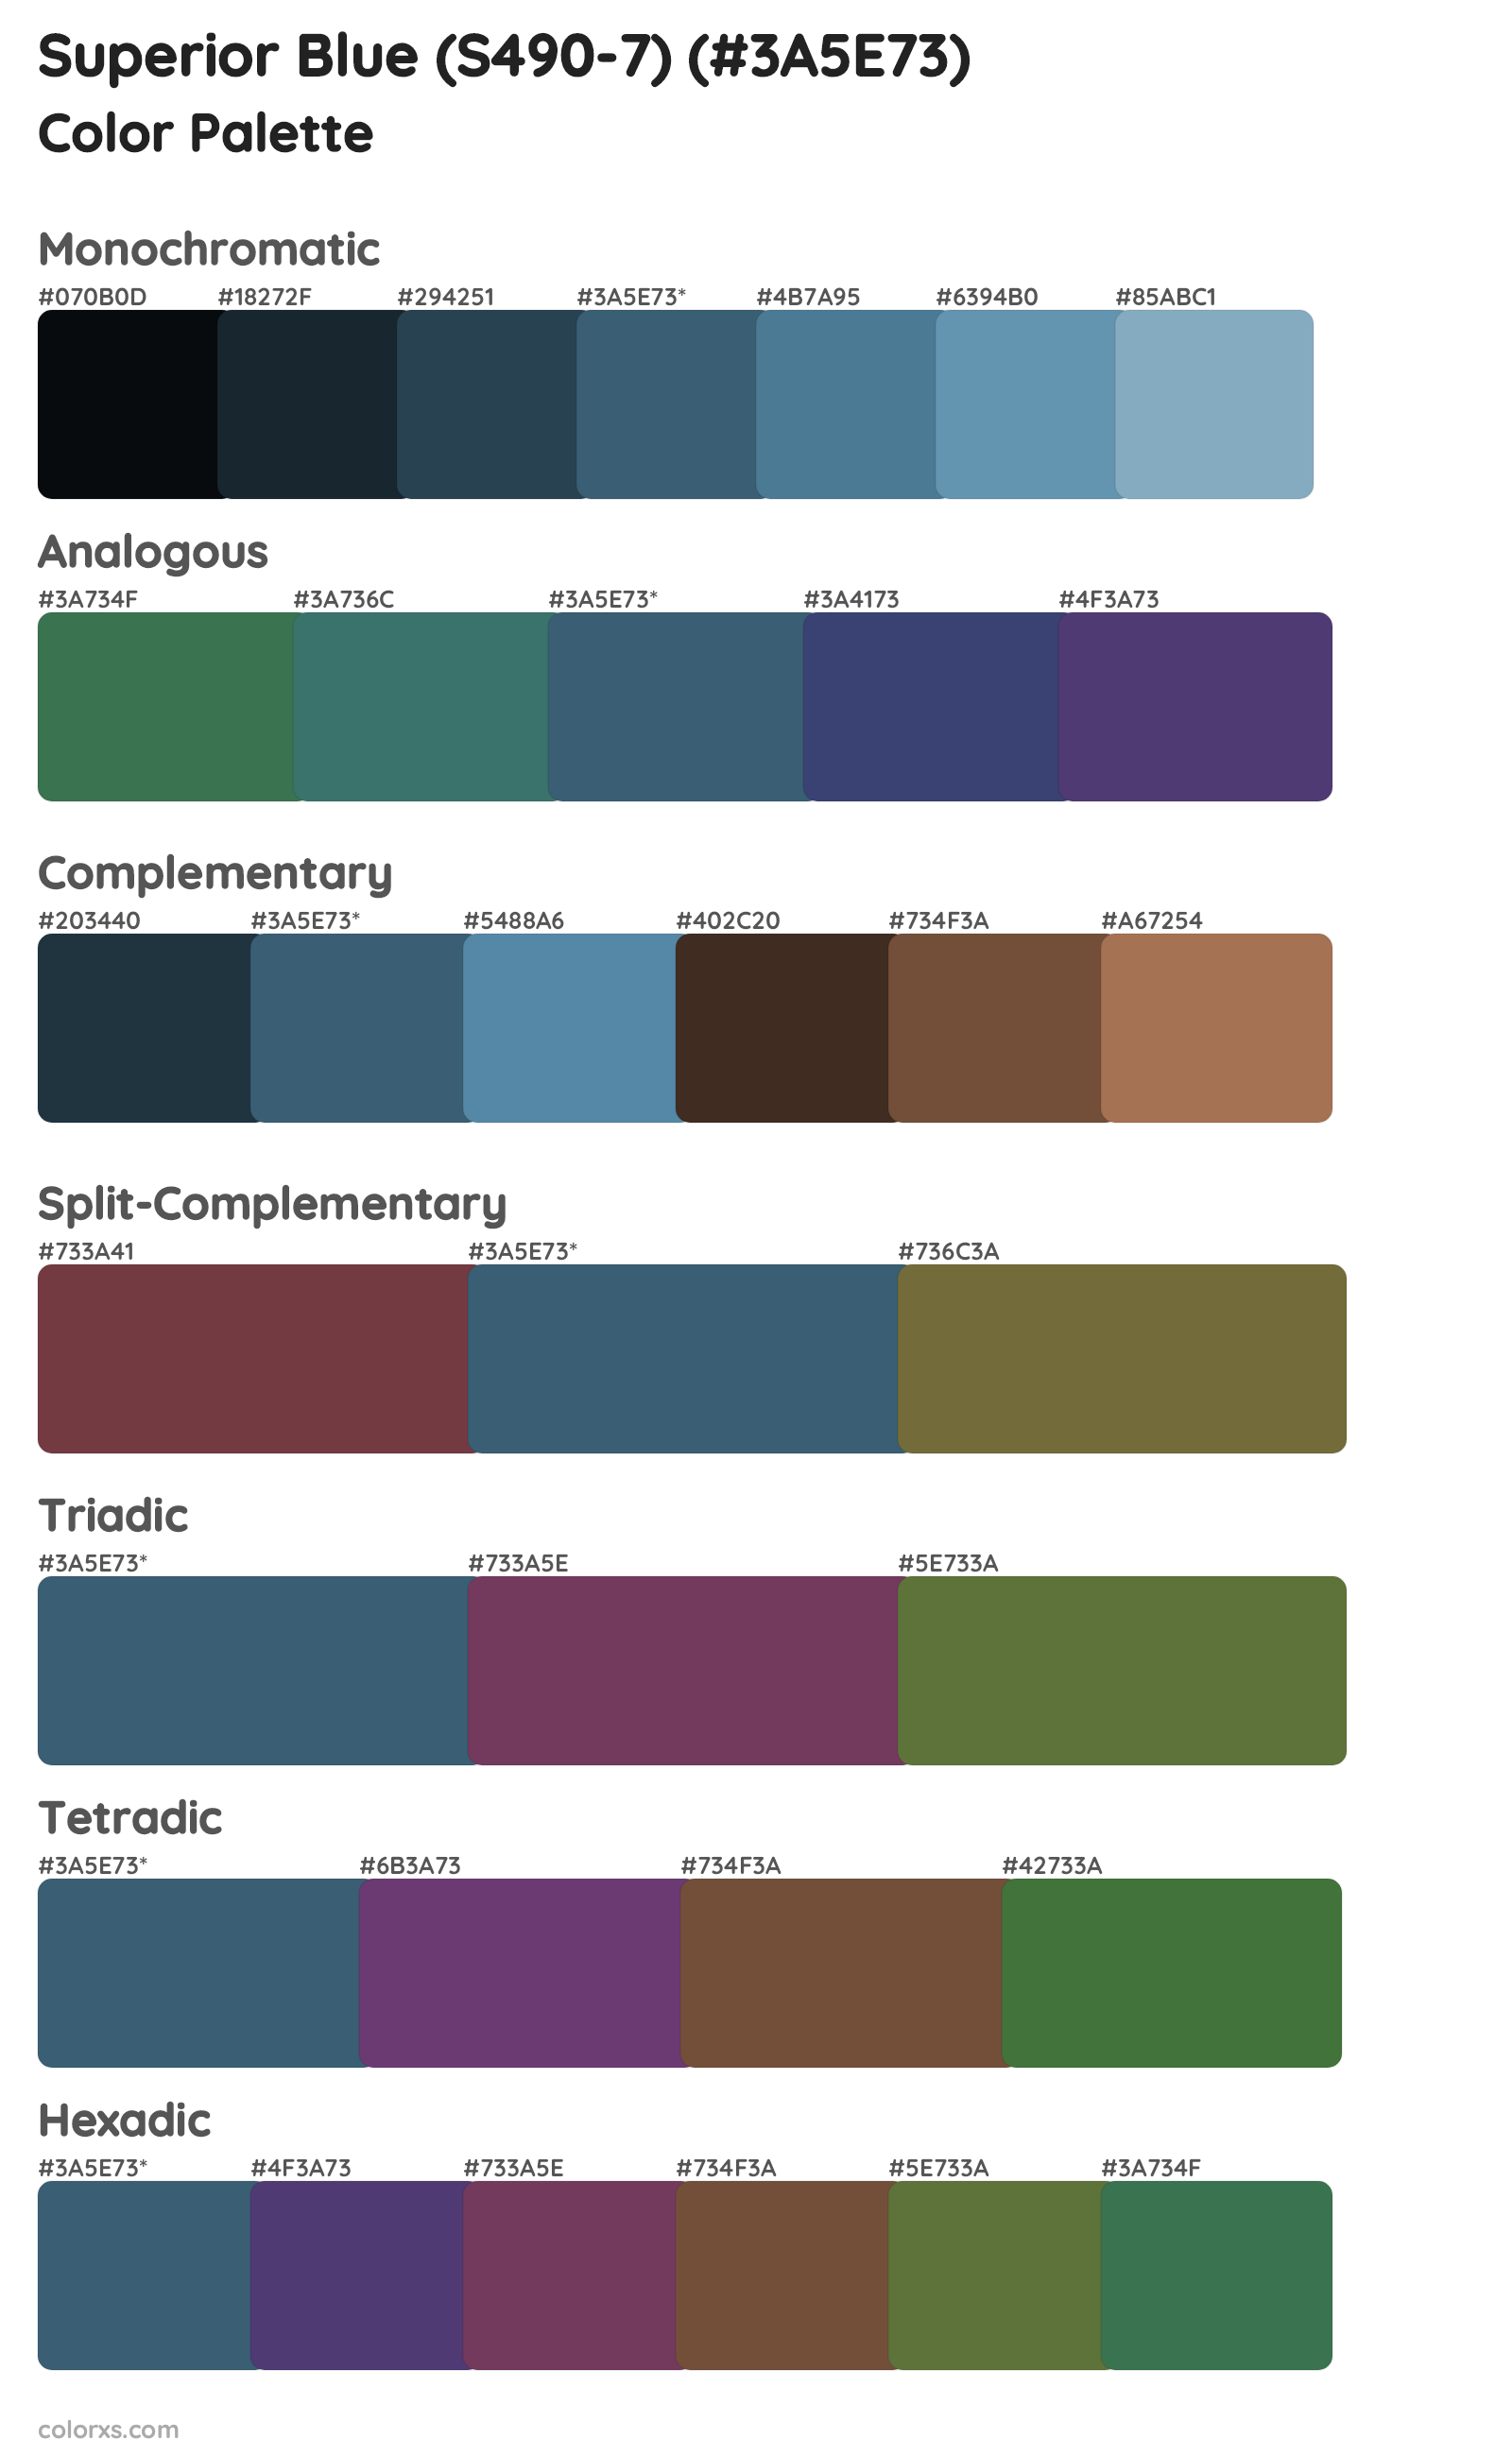 Superior Blue (S490-7) Color Scheme Palettes